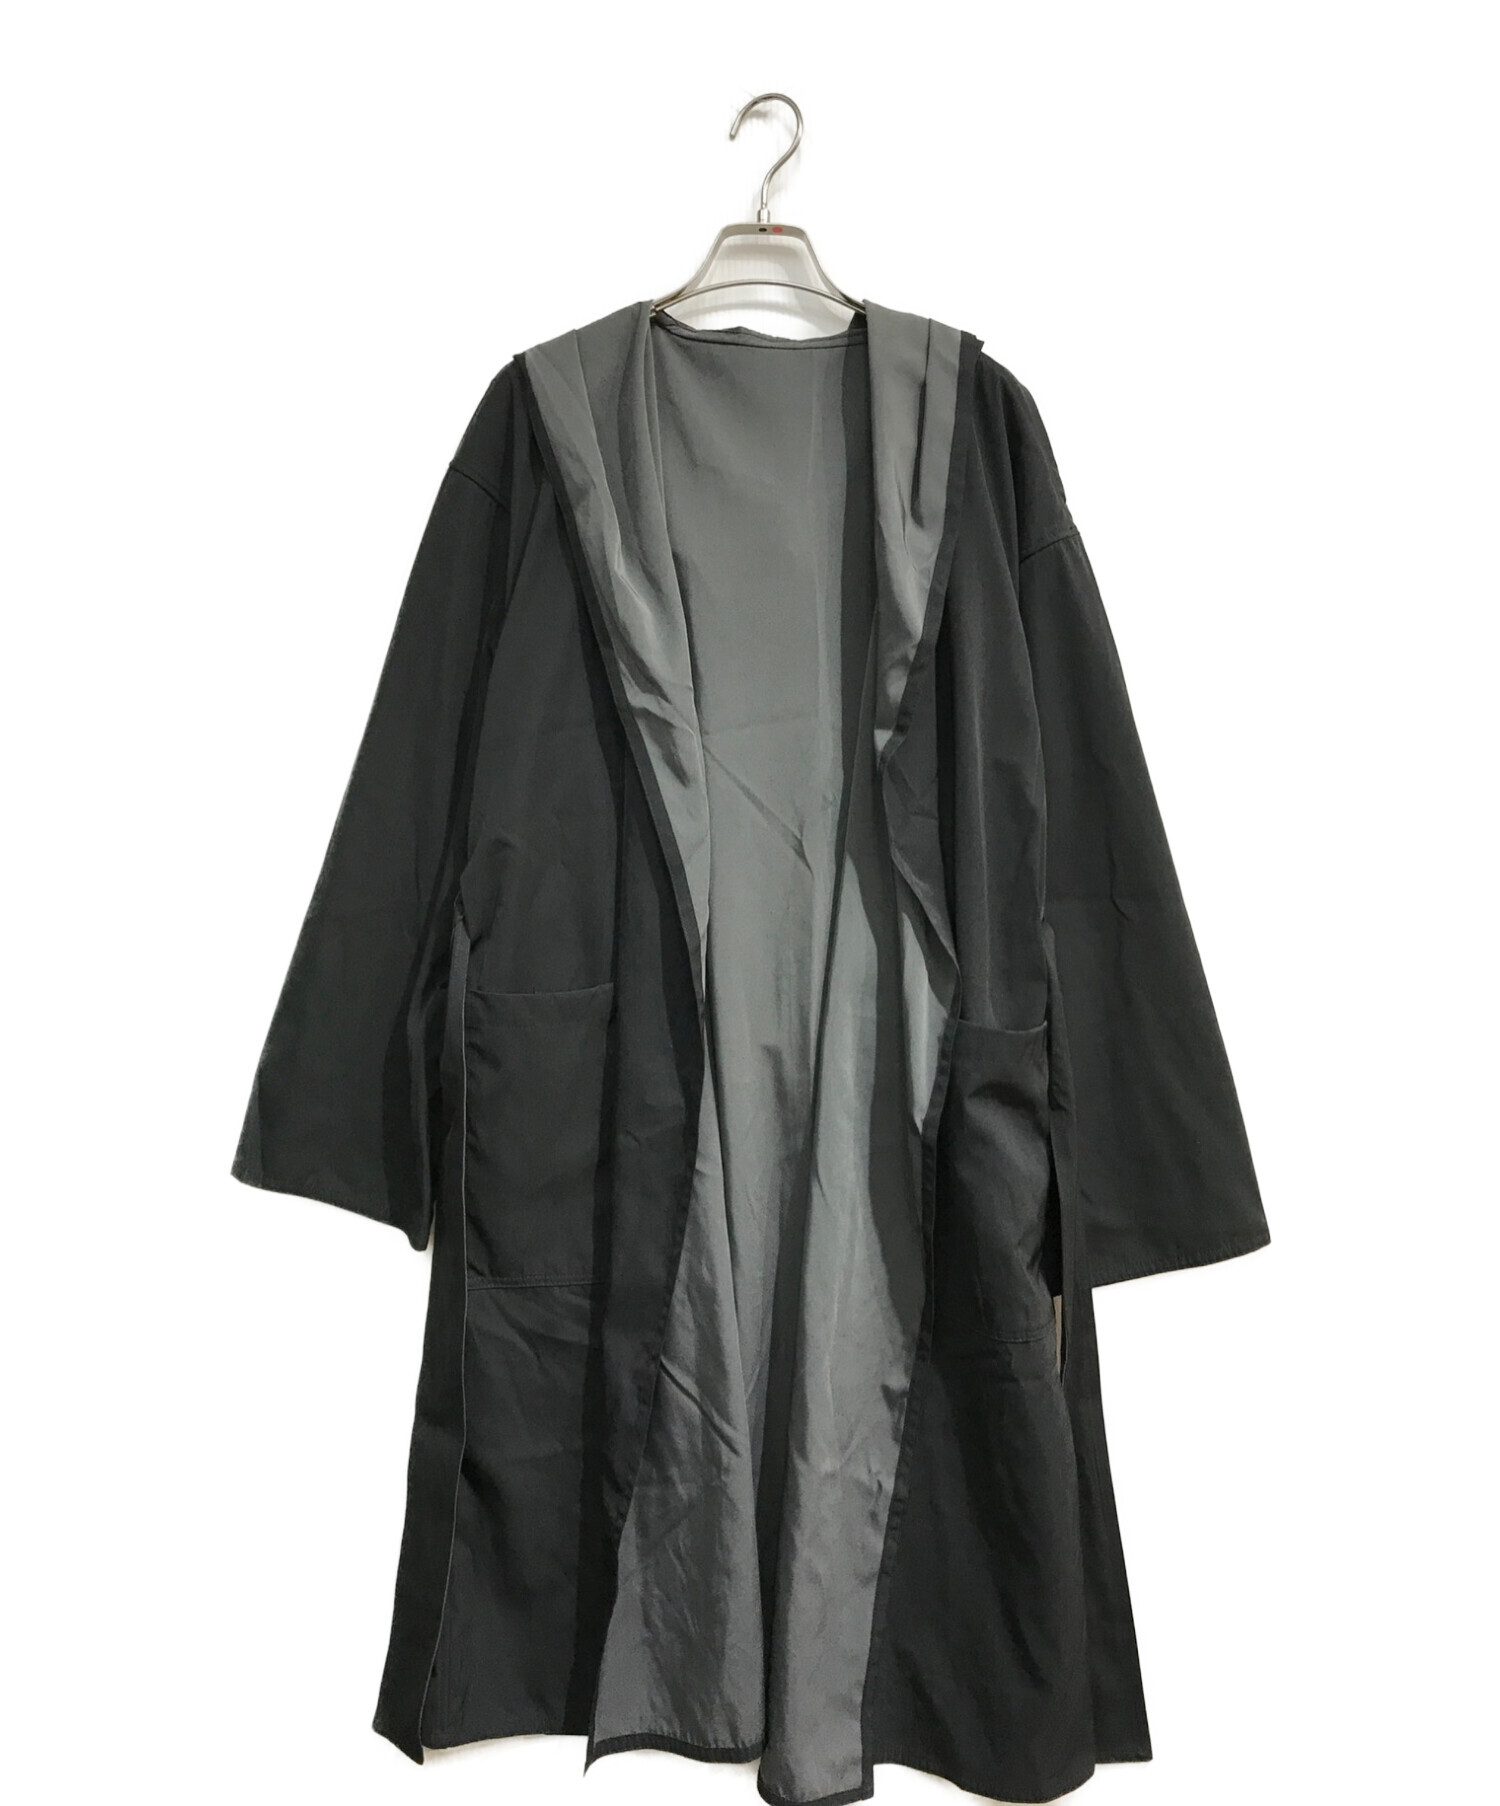 SPECCHIO (スペッチオ) バイカラーリバーシブル フーデッドコート 112-802 ブラック×グレー サイズ:40